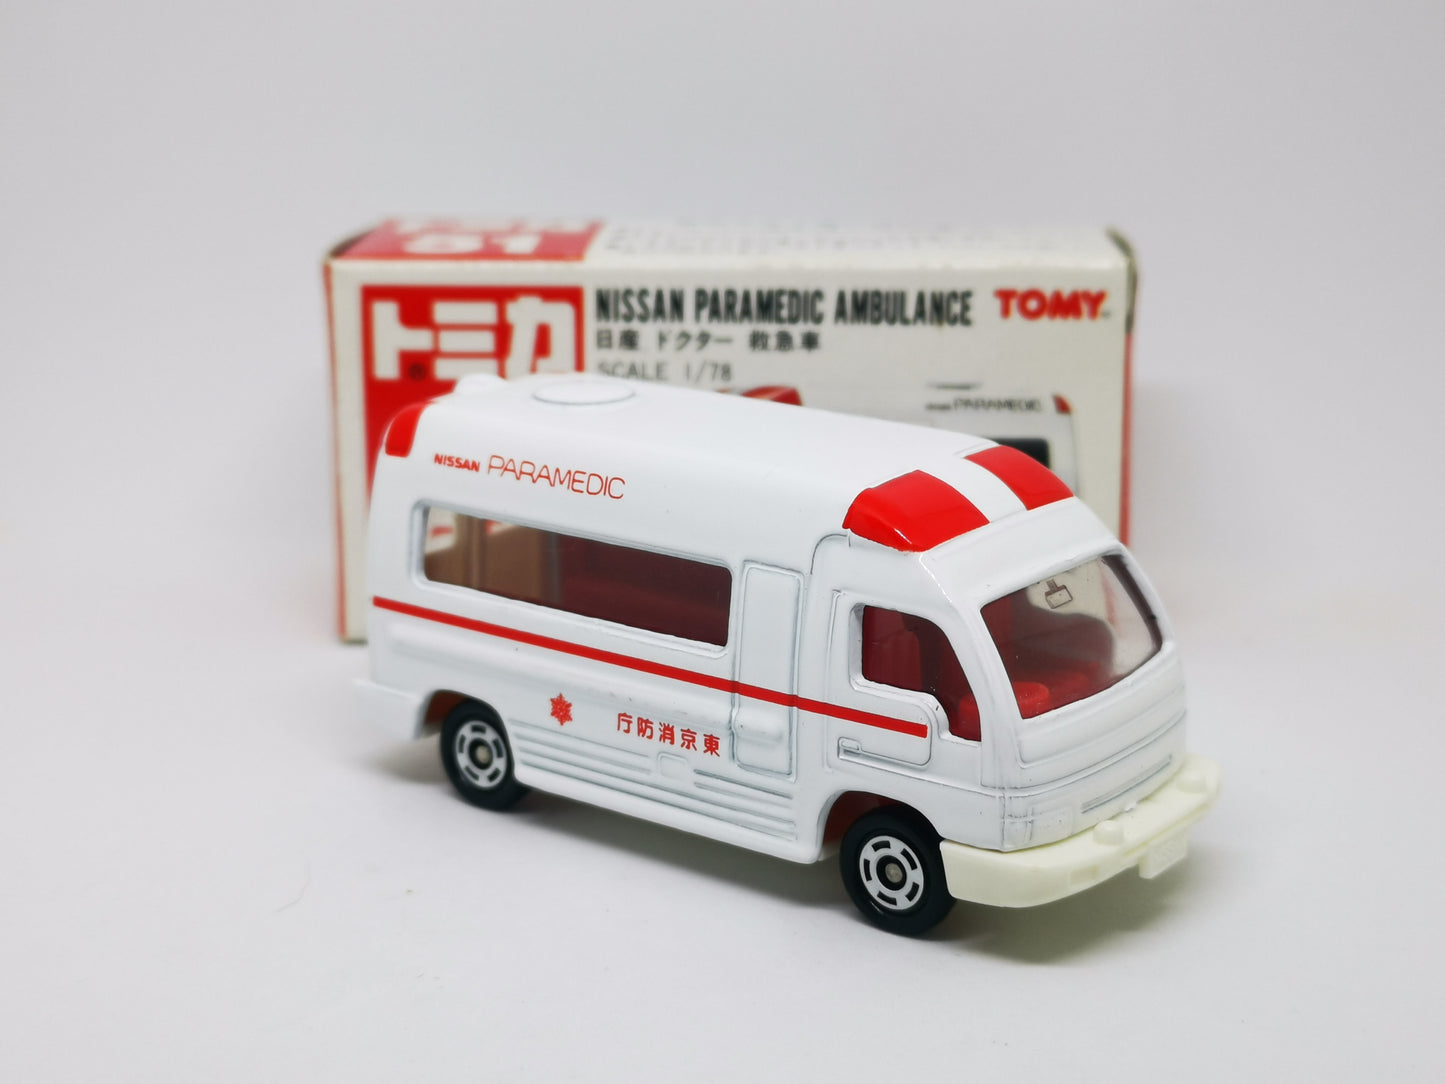 Tomica No.51 Nissan Paramedic Ambulance